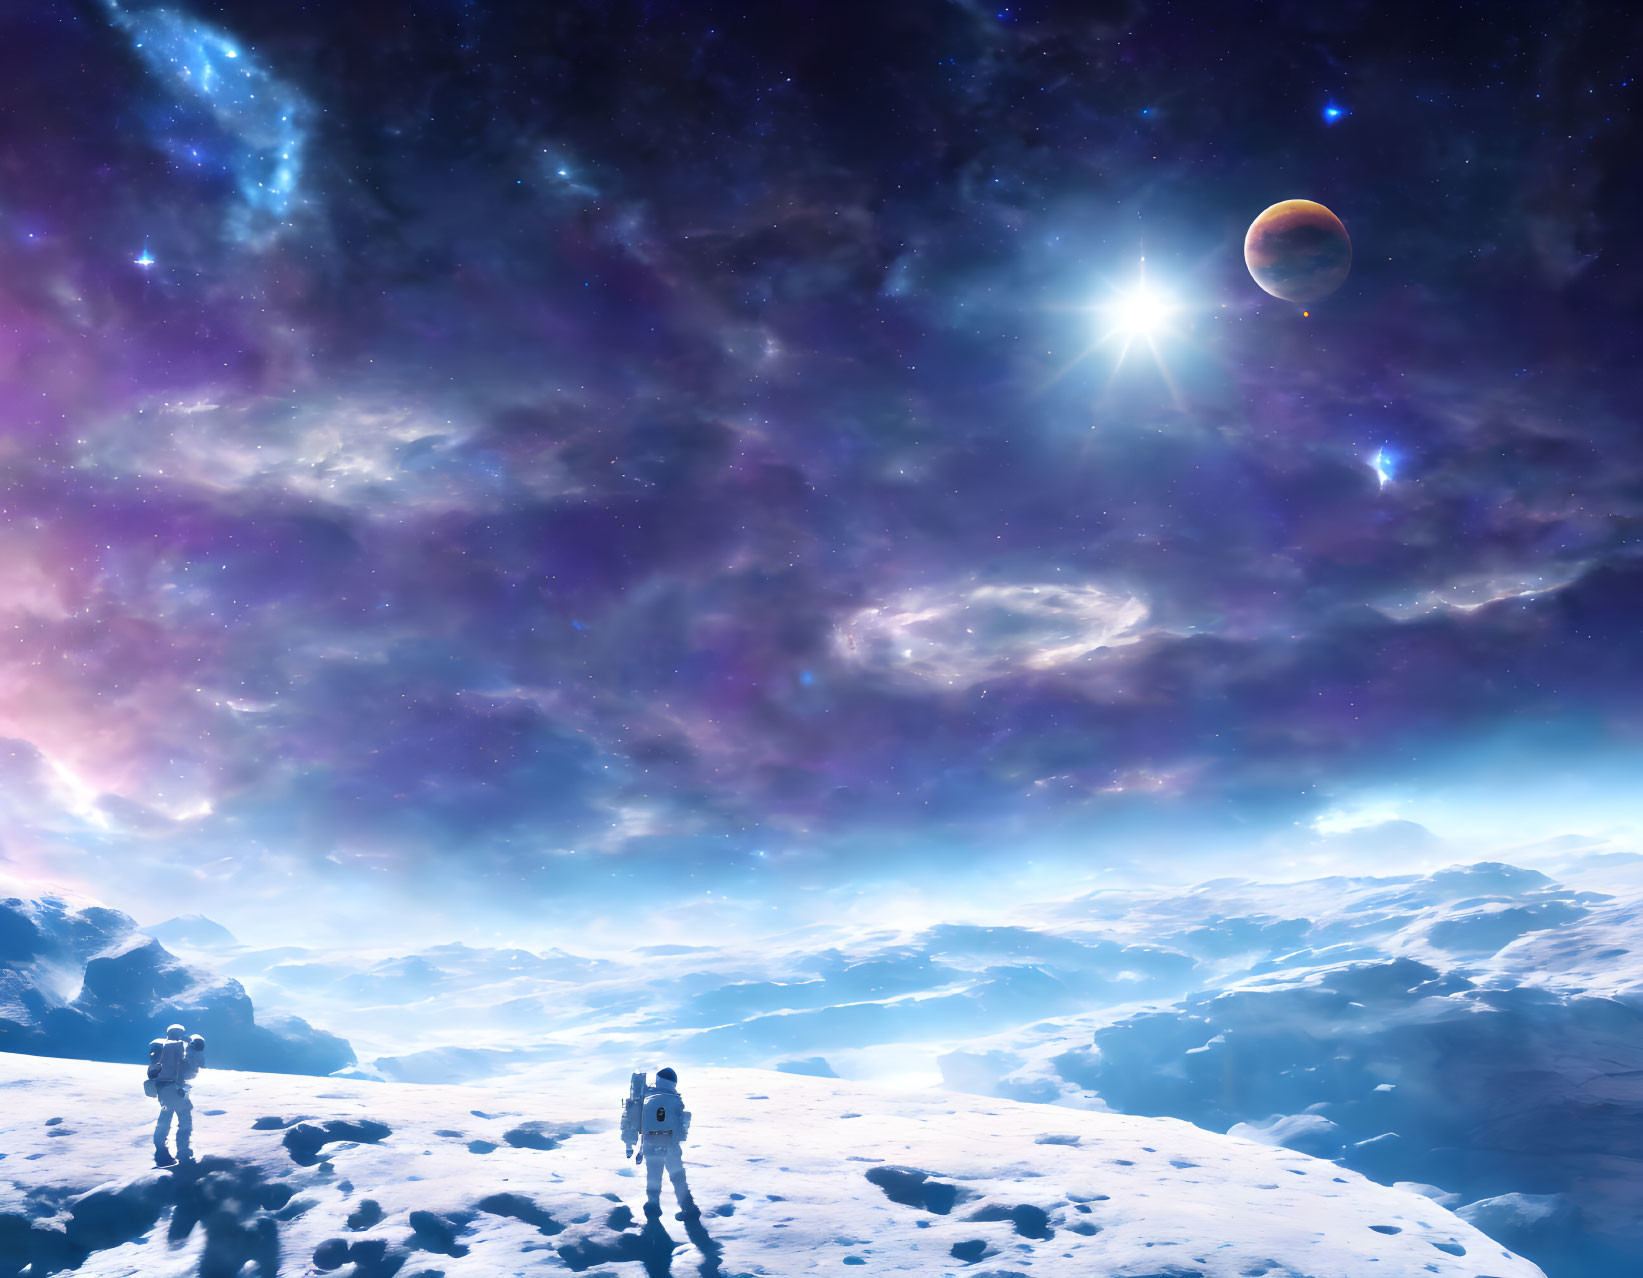 Astronauts on snowy alien terrain under cosmic sky